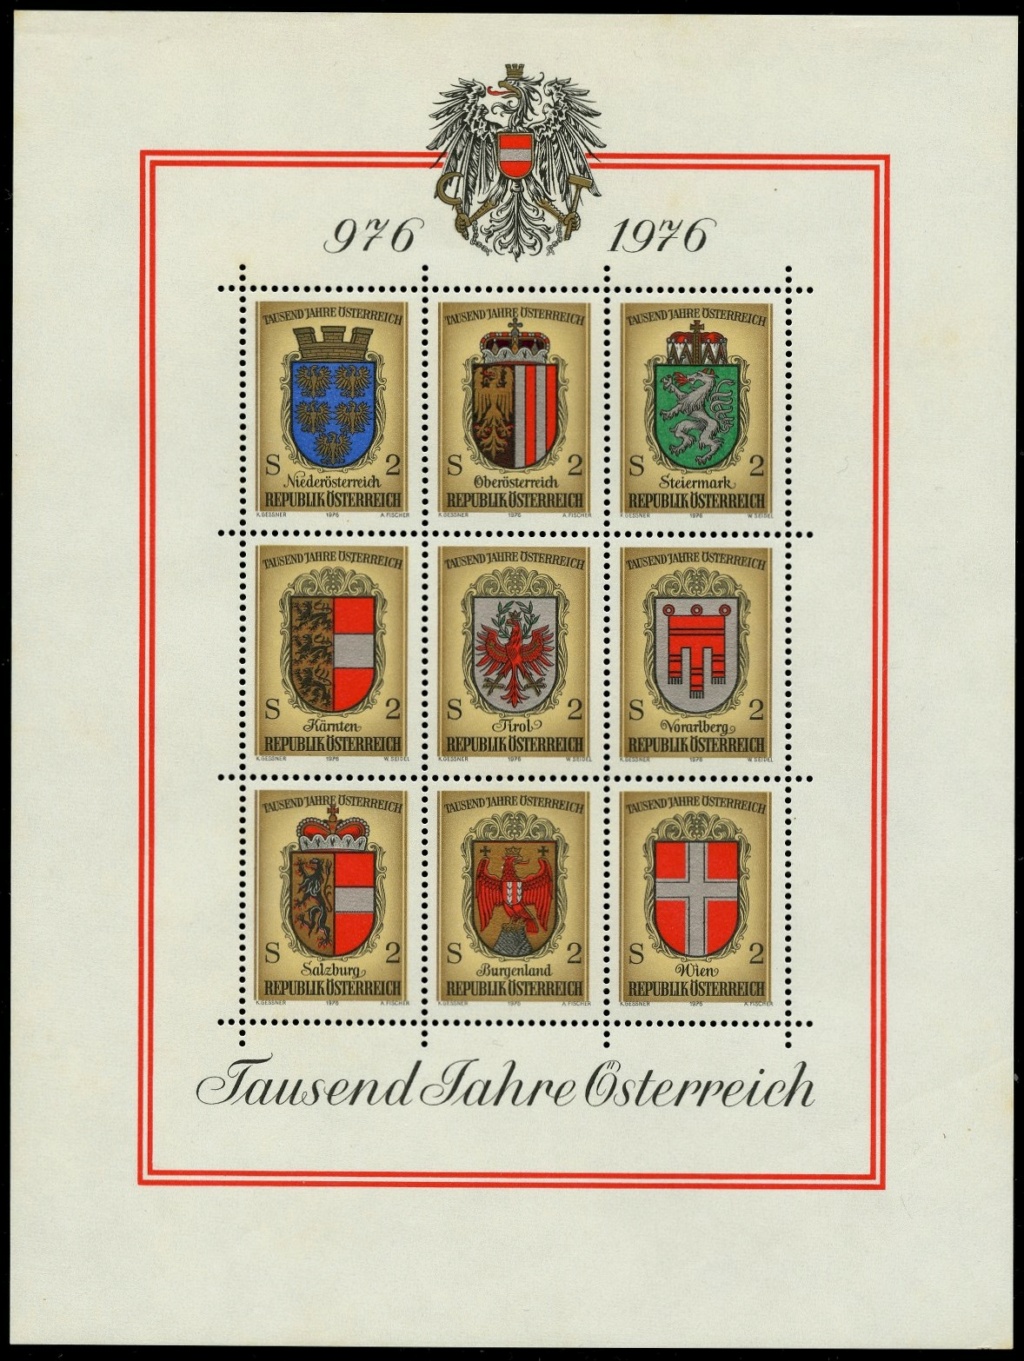 Osterreich - Österreich, Briefmarken der Jahre 1975 - 1979 Ank_1549